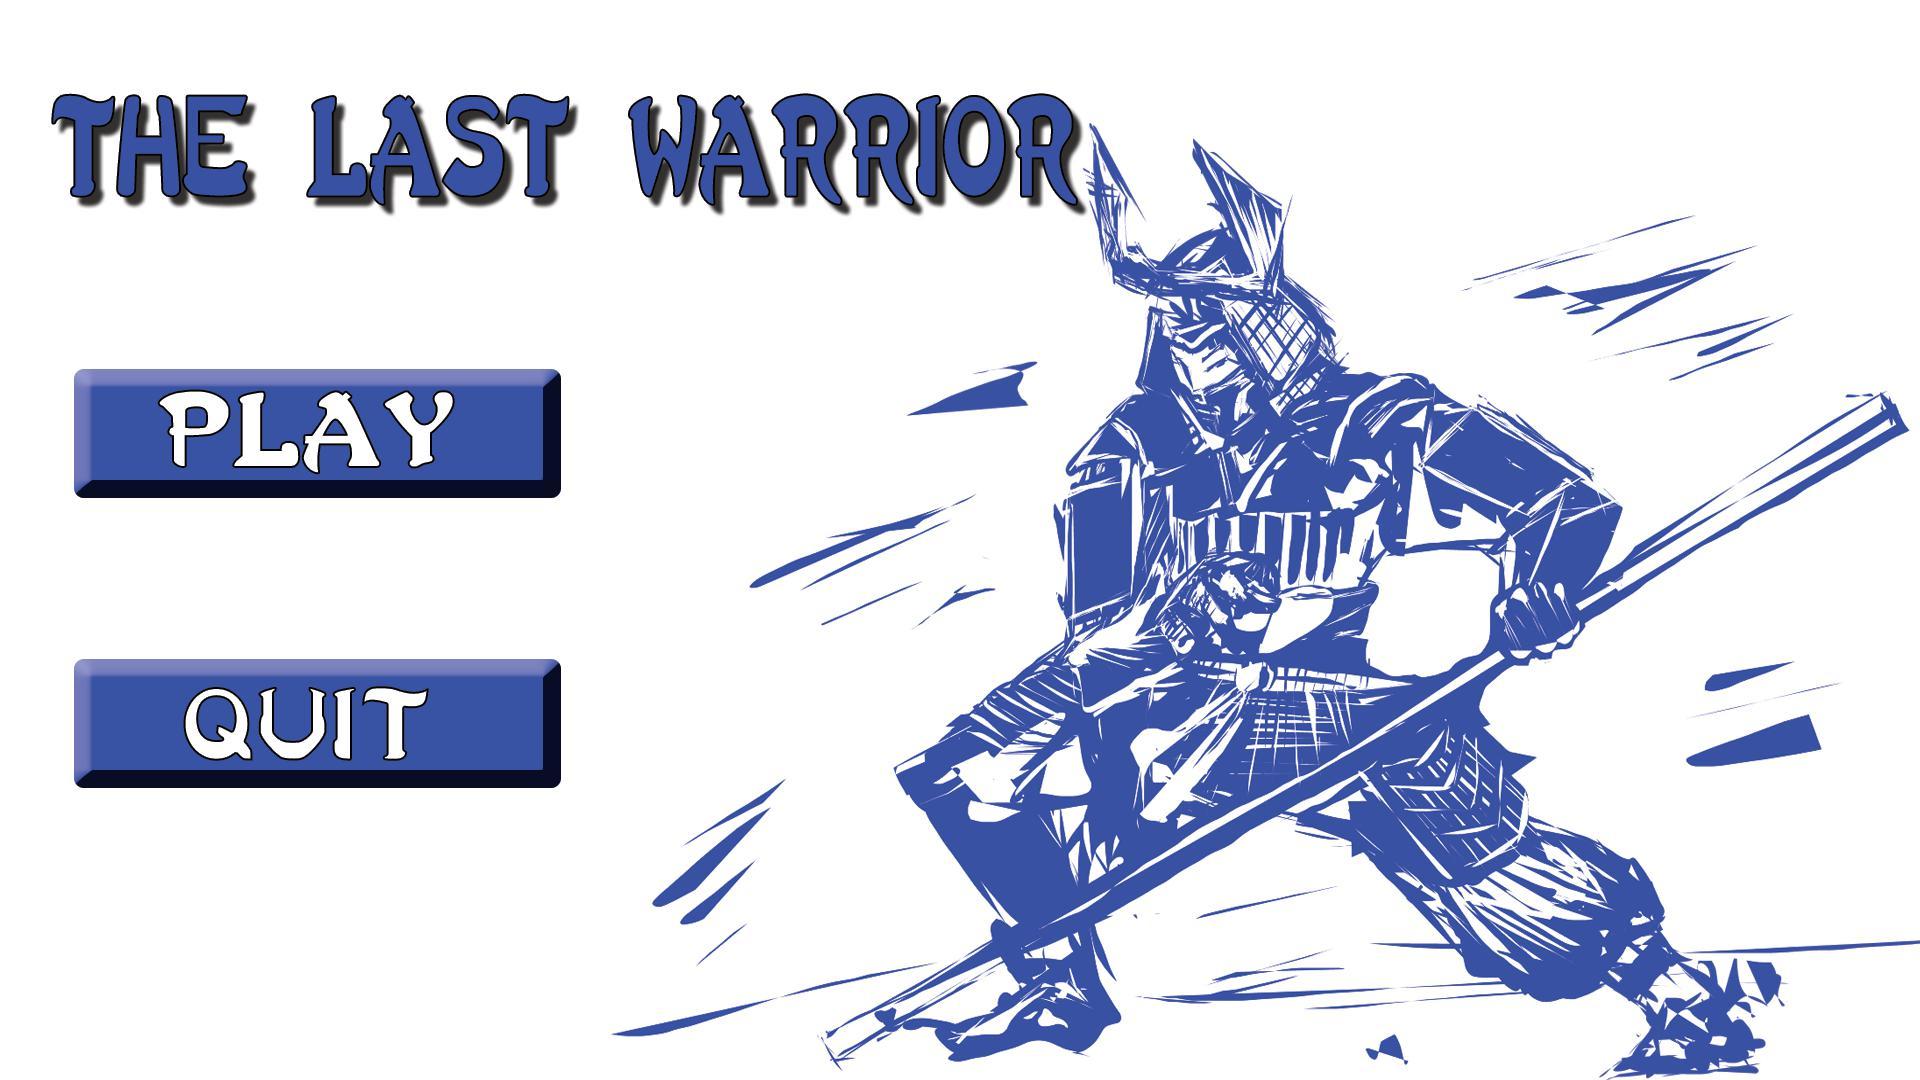 Skwlkr каспер first warrior. Last Warrior игра. Last.Warrior-Plaza. Last Warrior. The indefatigable Warrior Remastered PNG.